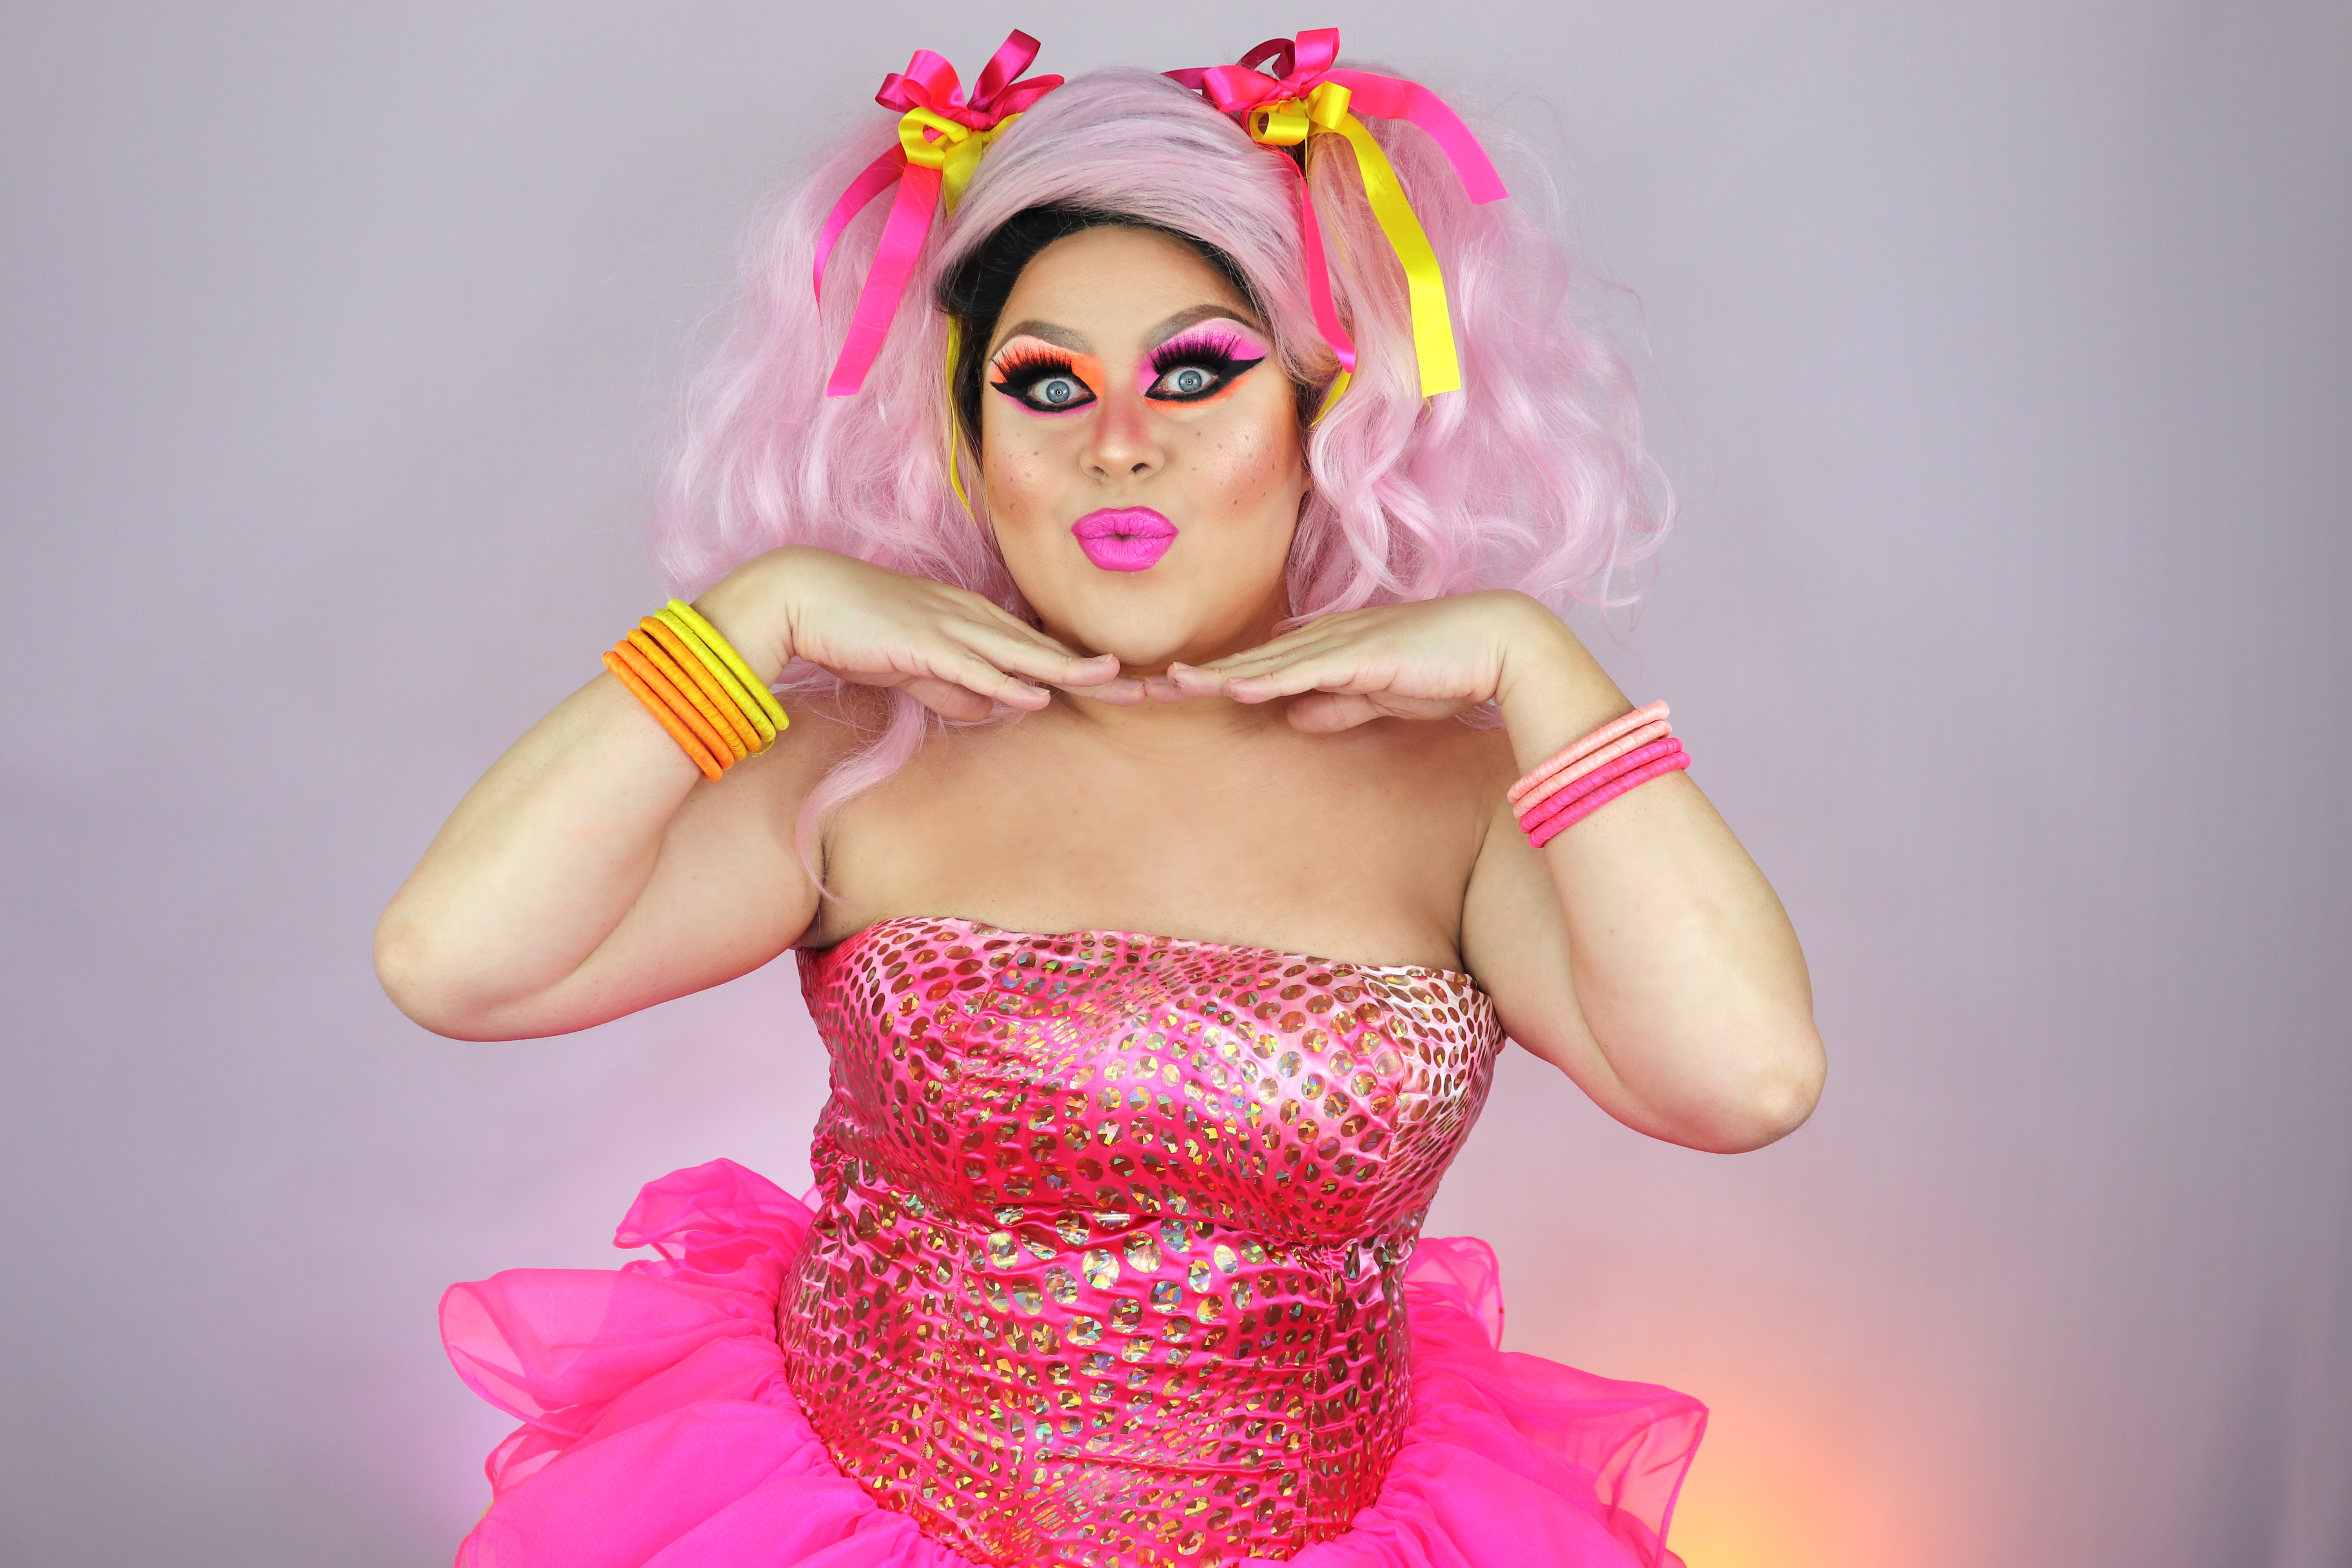 Drag queen posa montada com peruca, vestidos e acessórios rosa. Está com as mãos no queixo e fazendo bico com a boca